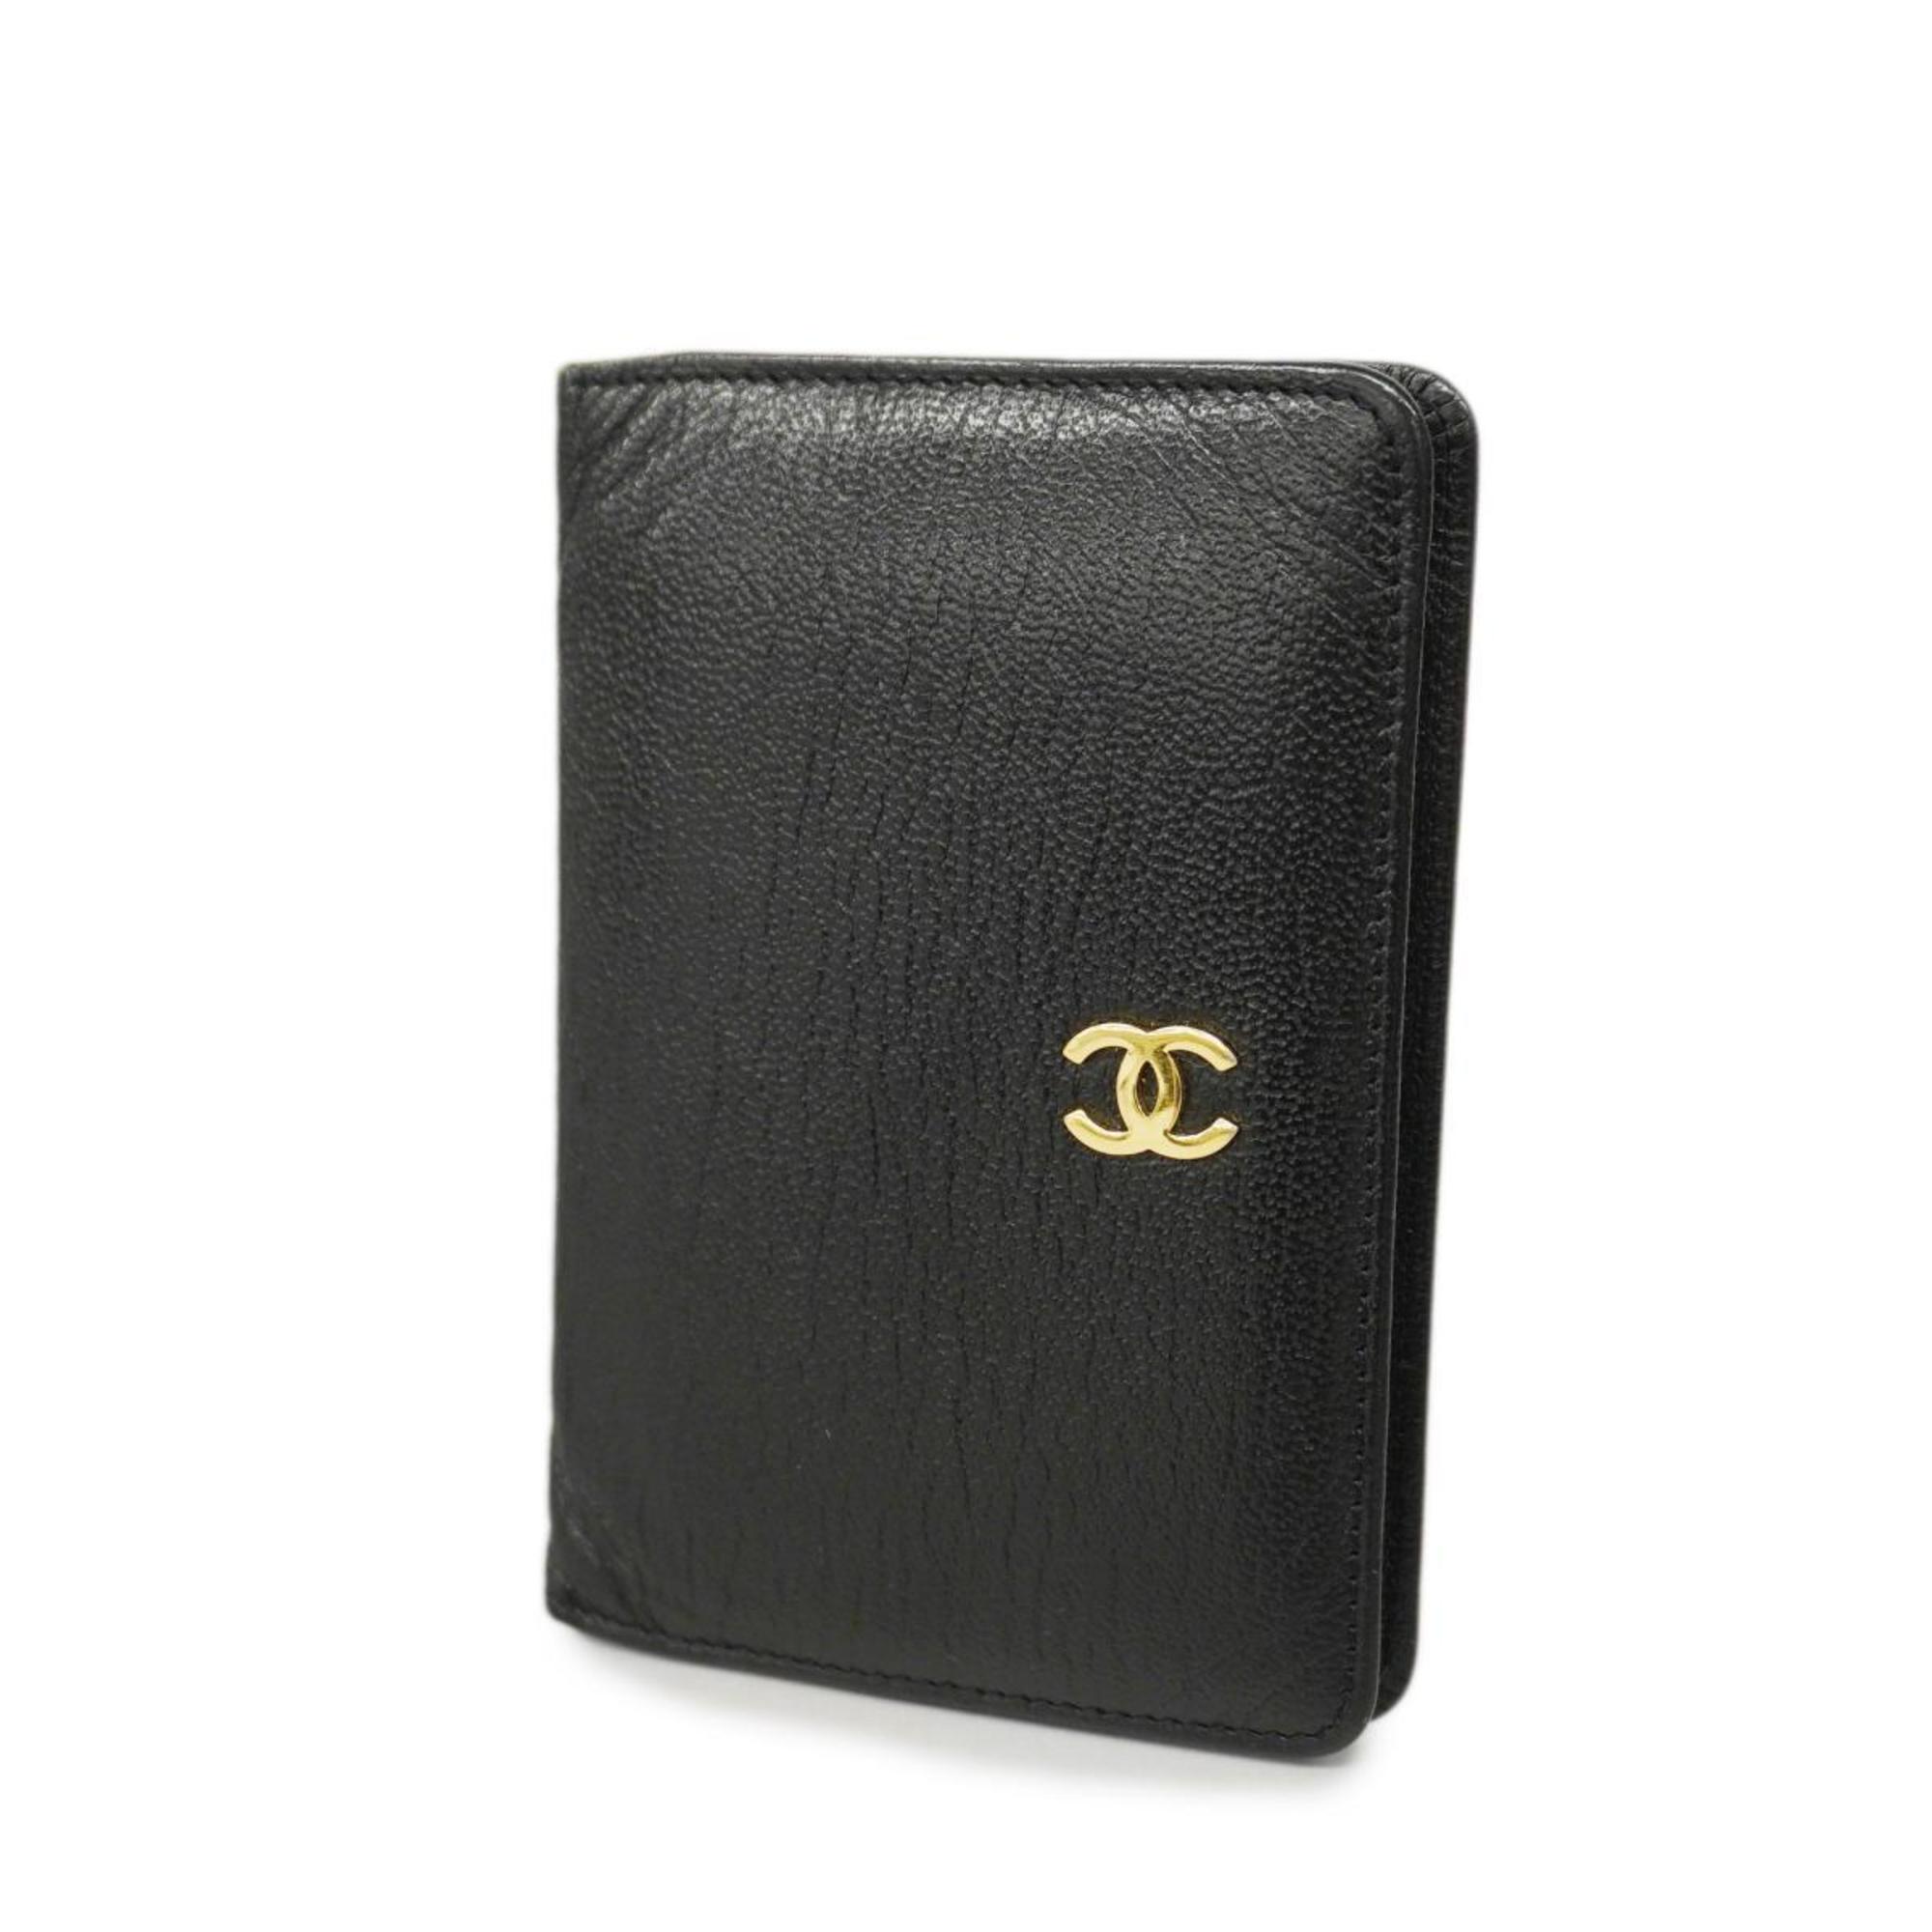 ブラック素材ラインCHANEL カードケース レザー ブラック - 財布